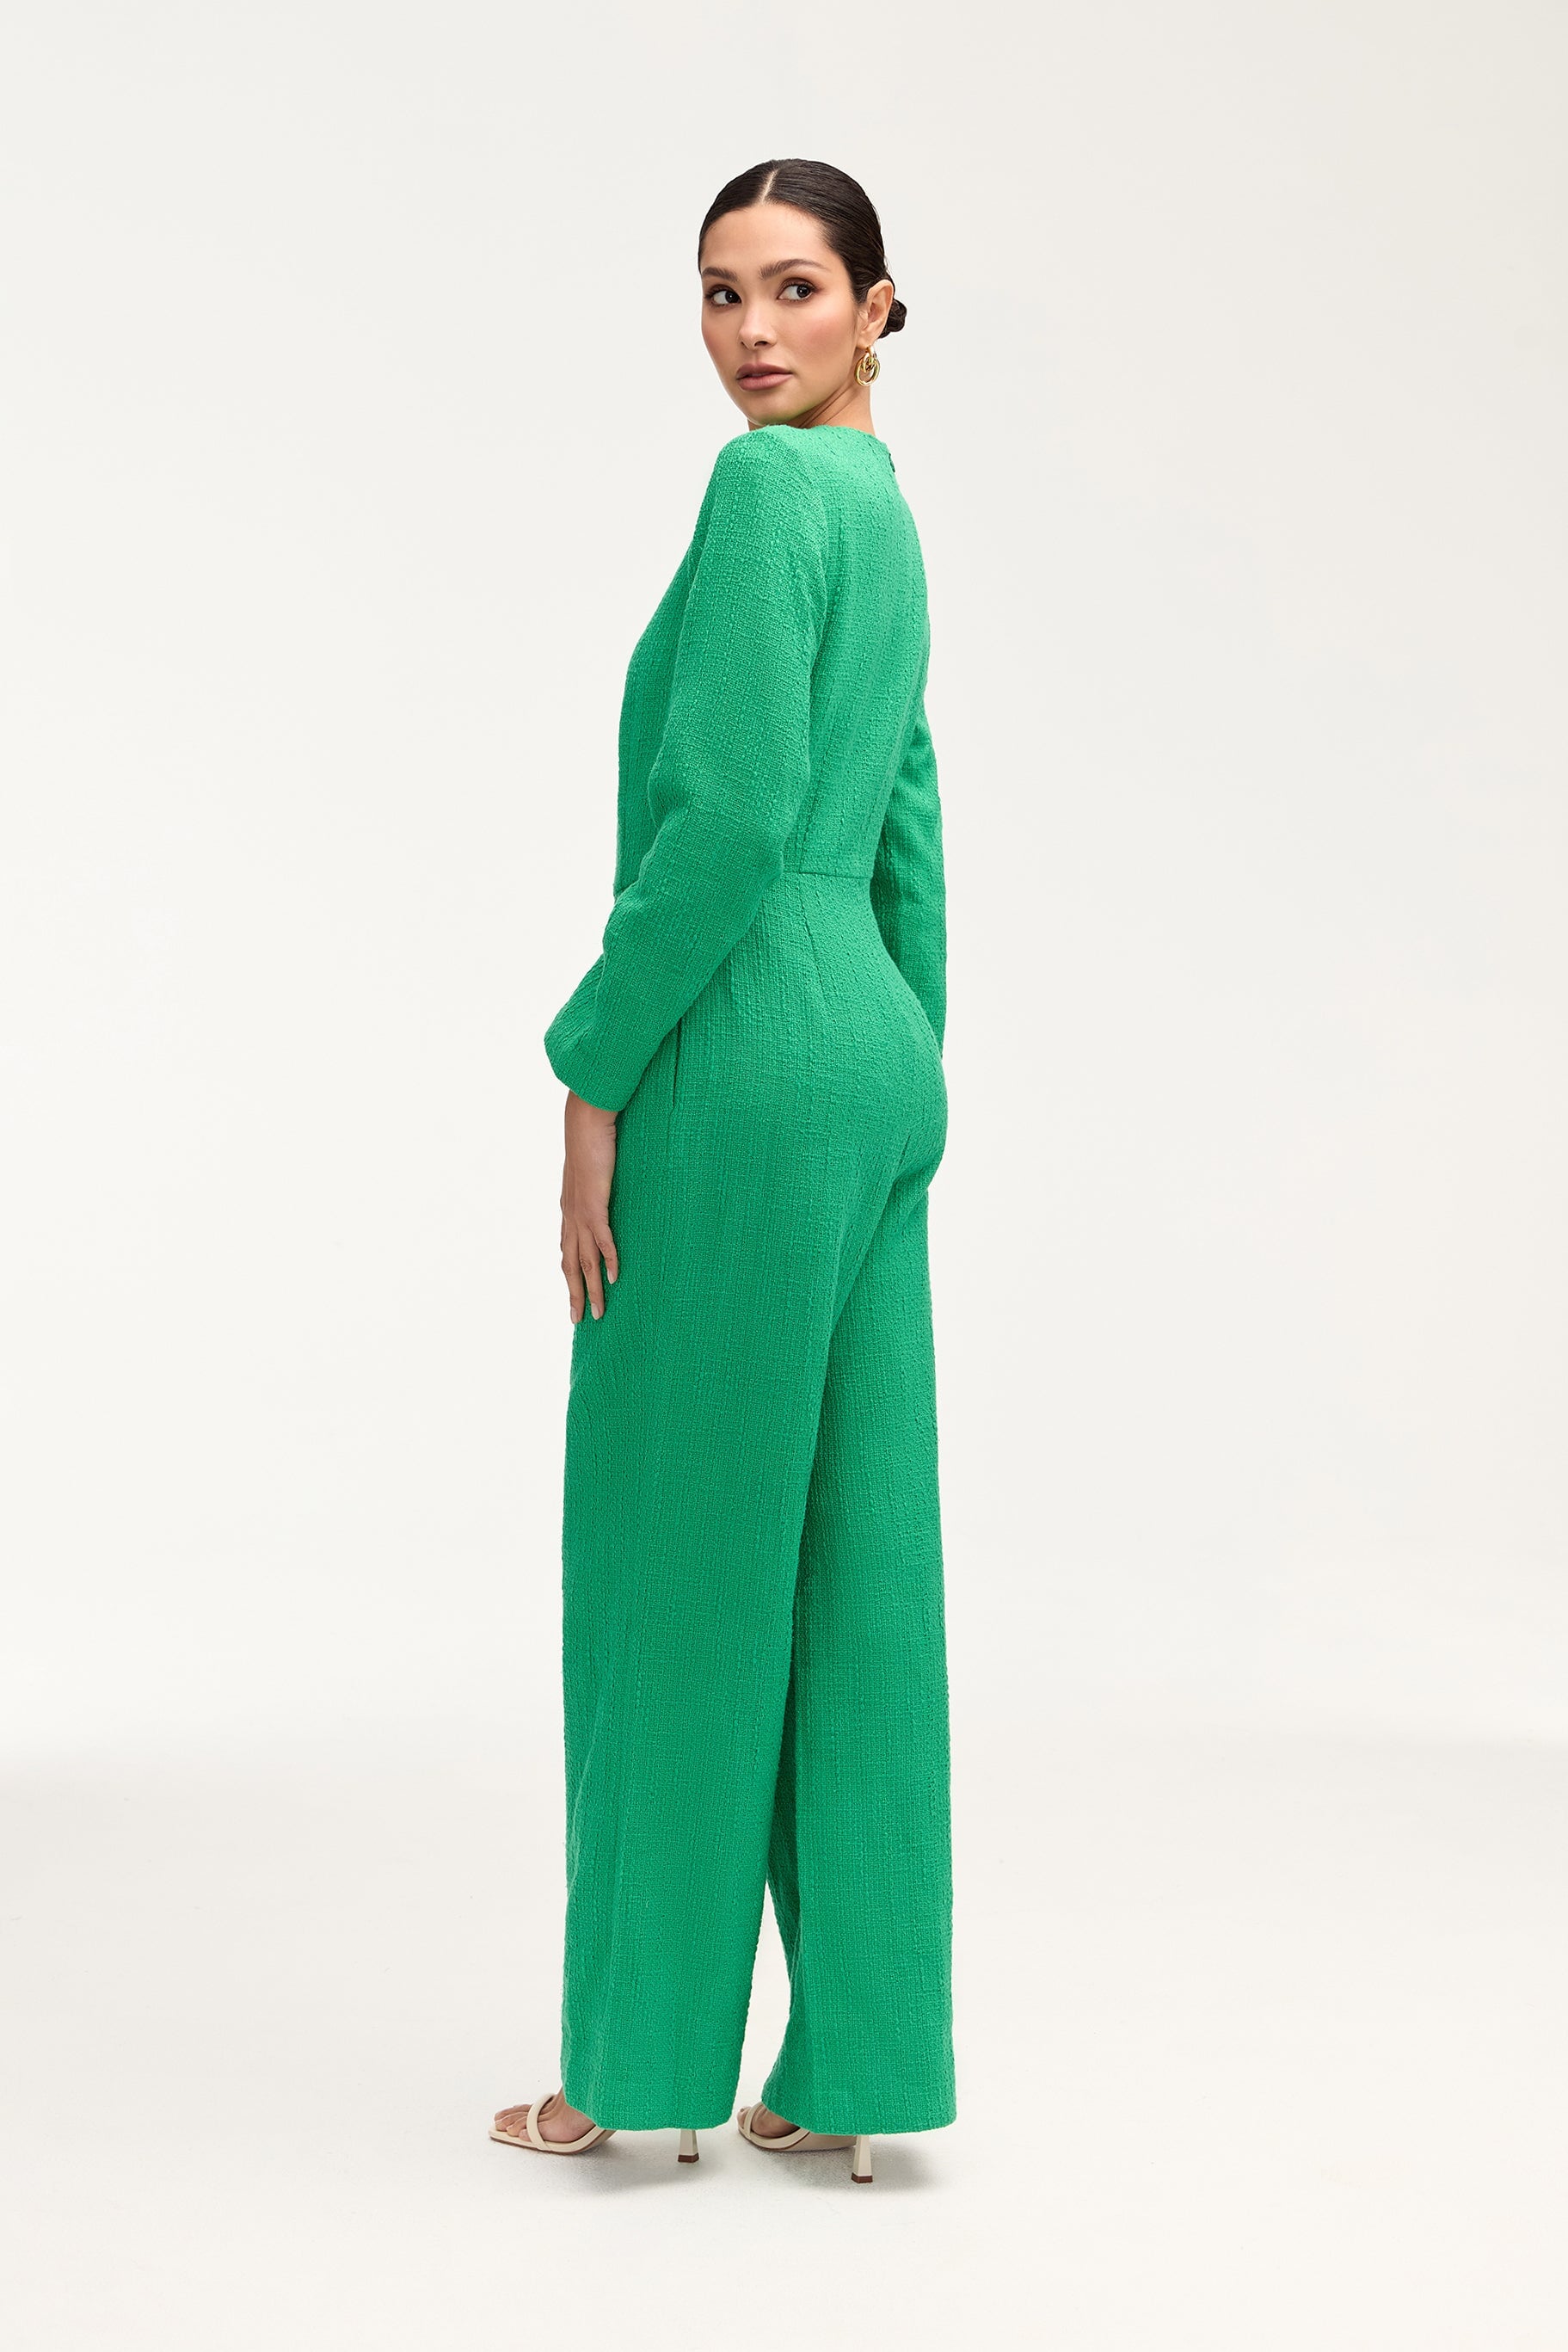 Aurora Tweed Long Sleeve Jumpsuit - Jade Jumpsuits Veiled 